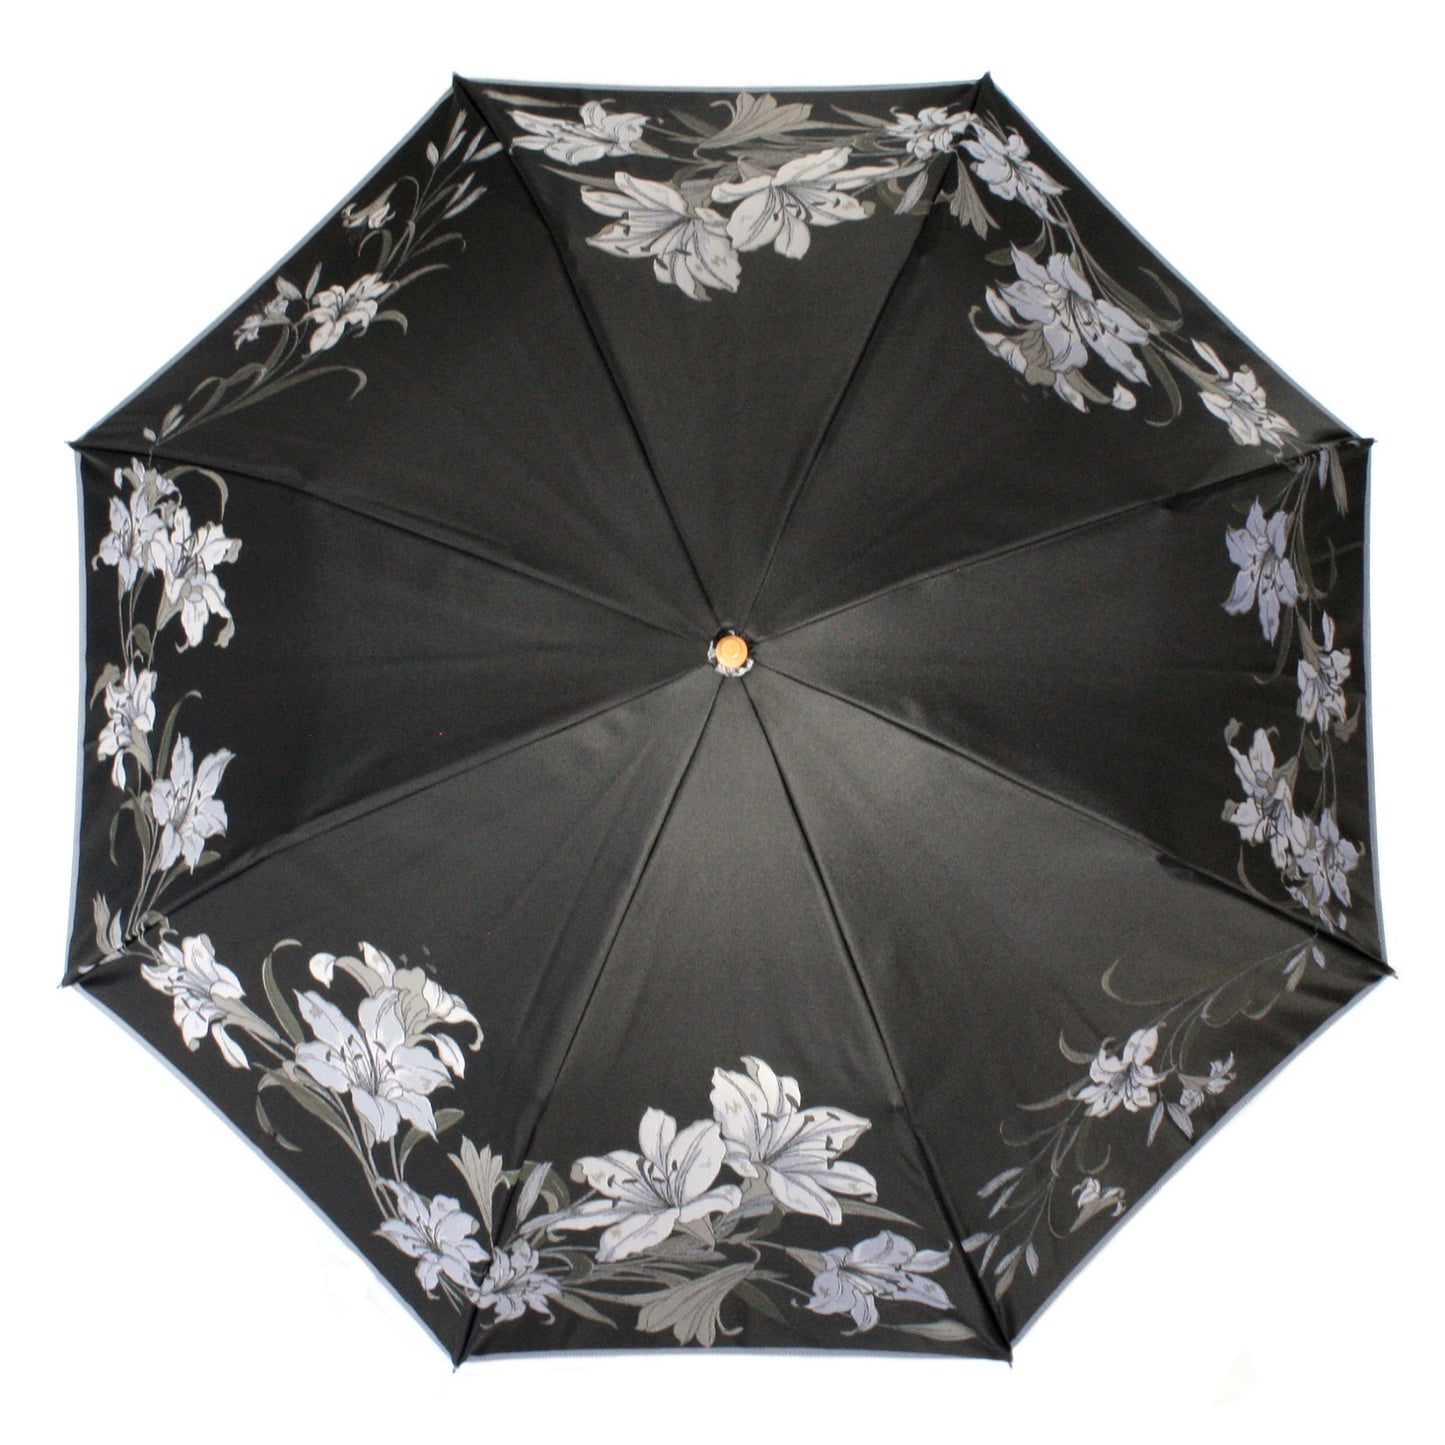 Rain & sun umbrella "lily" 